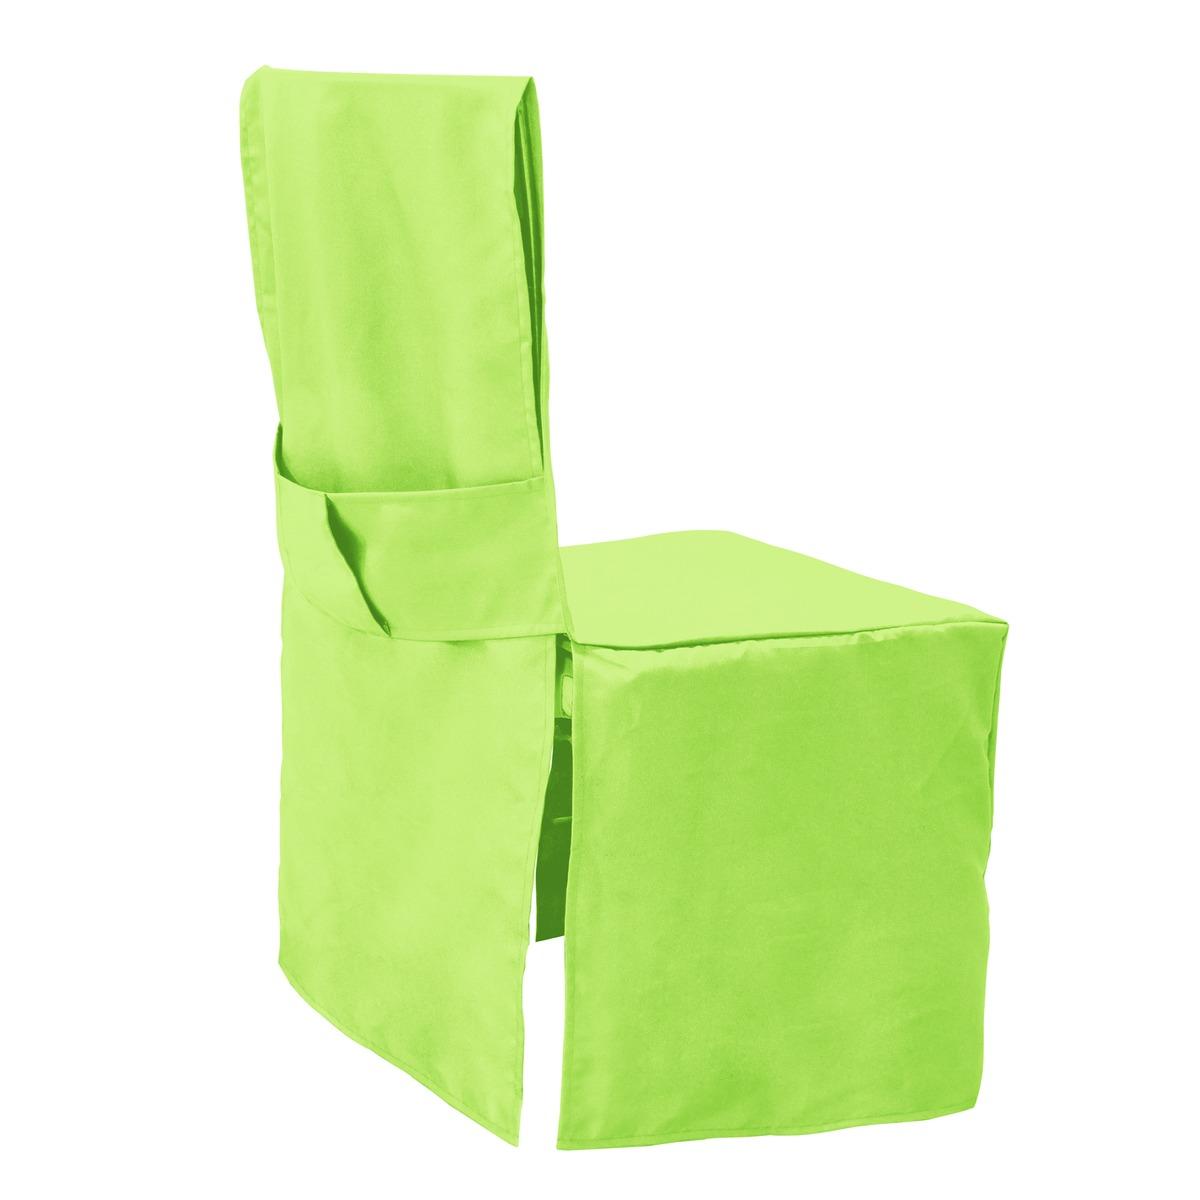 Housse de chaise en tissus - 45 x 45 x H 100 cm - différents coloris